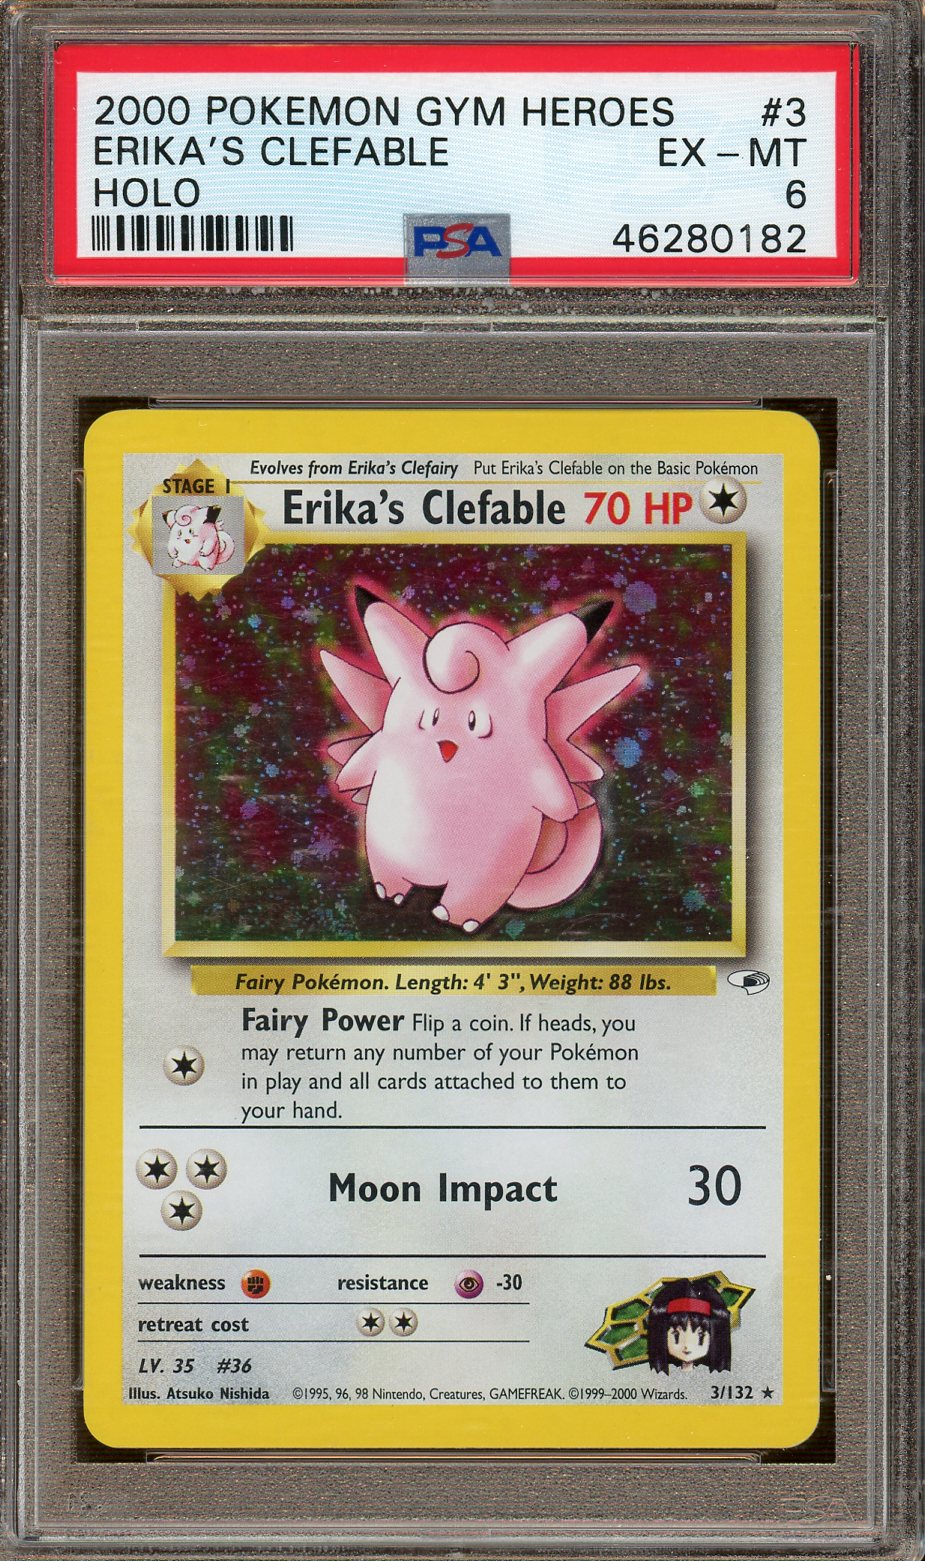 PSA 6 - 2000 Pokemon Gym Heros - Erika's Clefable - Holo